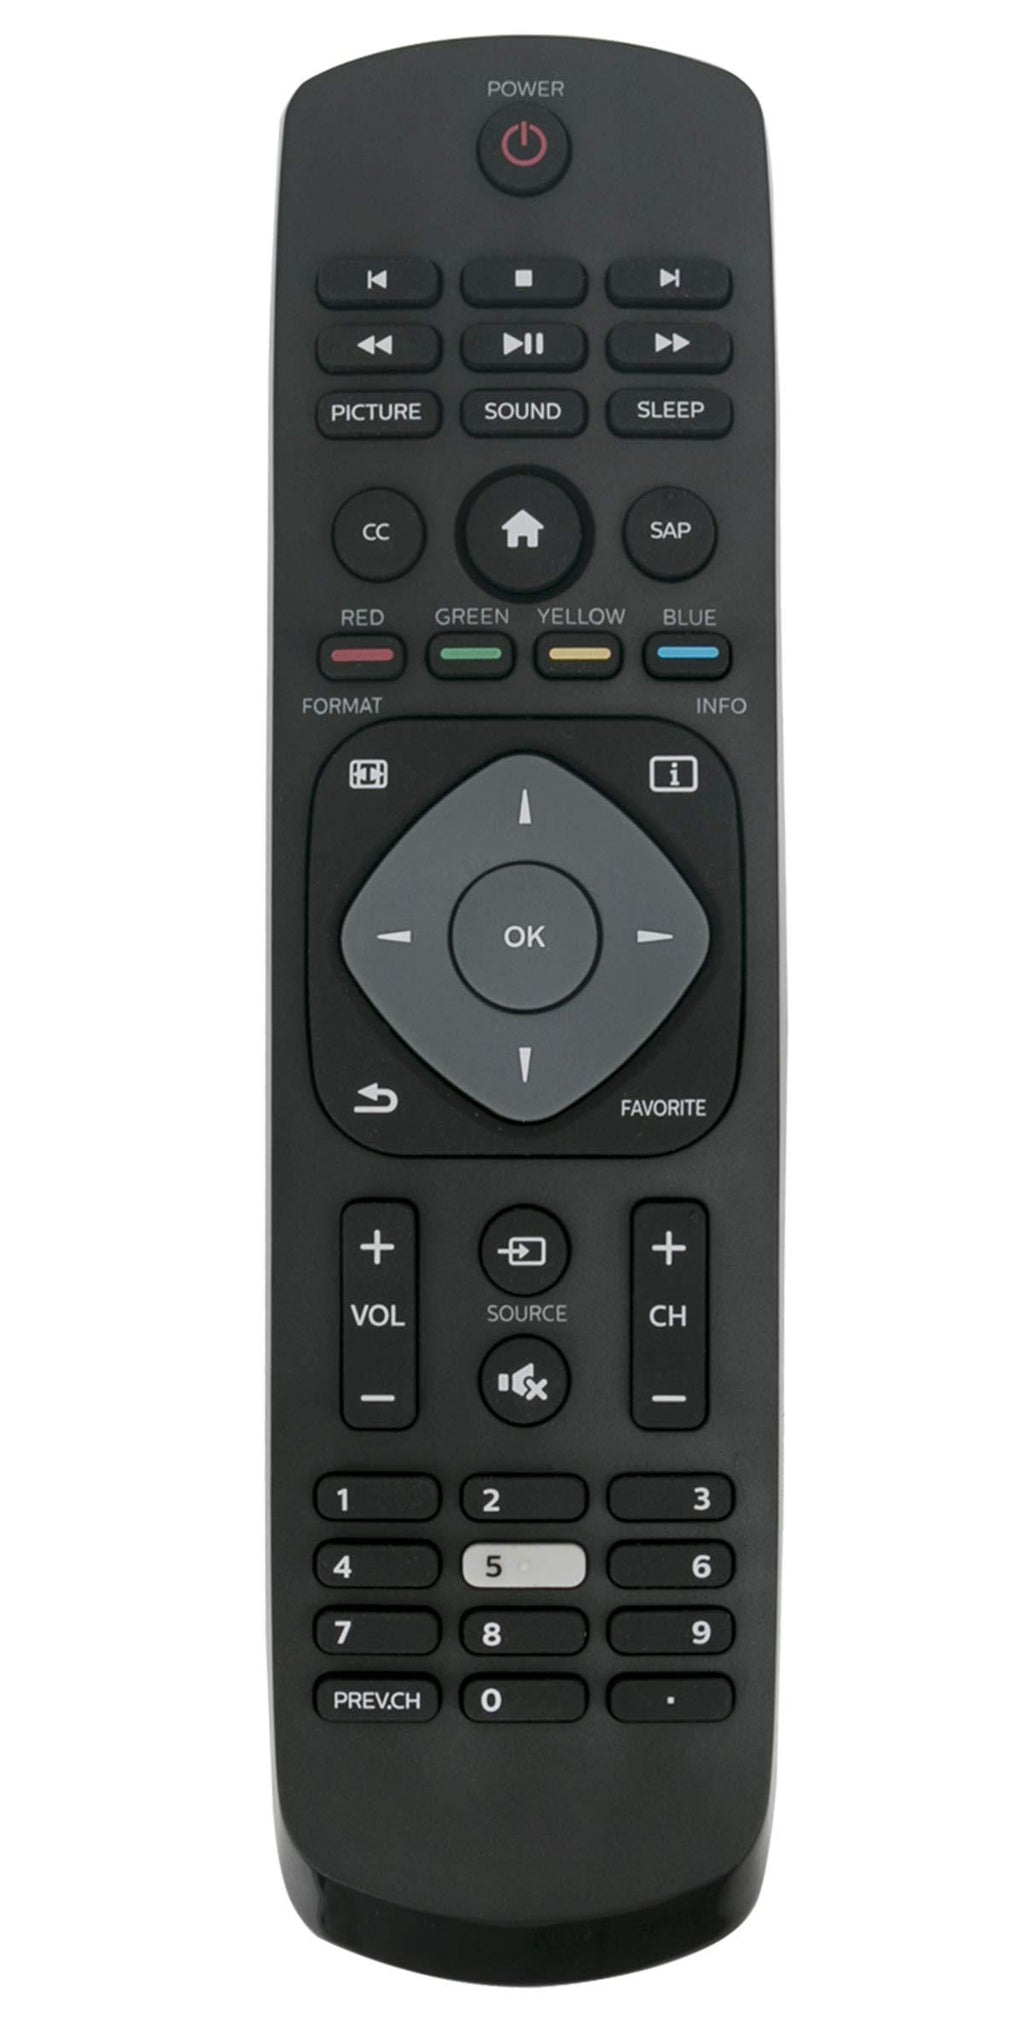 New Replaced Remote fit for Philips TV 24PFL3603 24PFL3603/F7 65PFL5922/F7 RR24PFL3603/F7